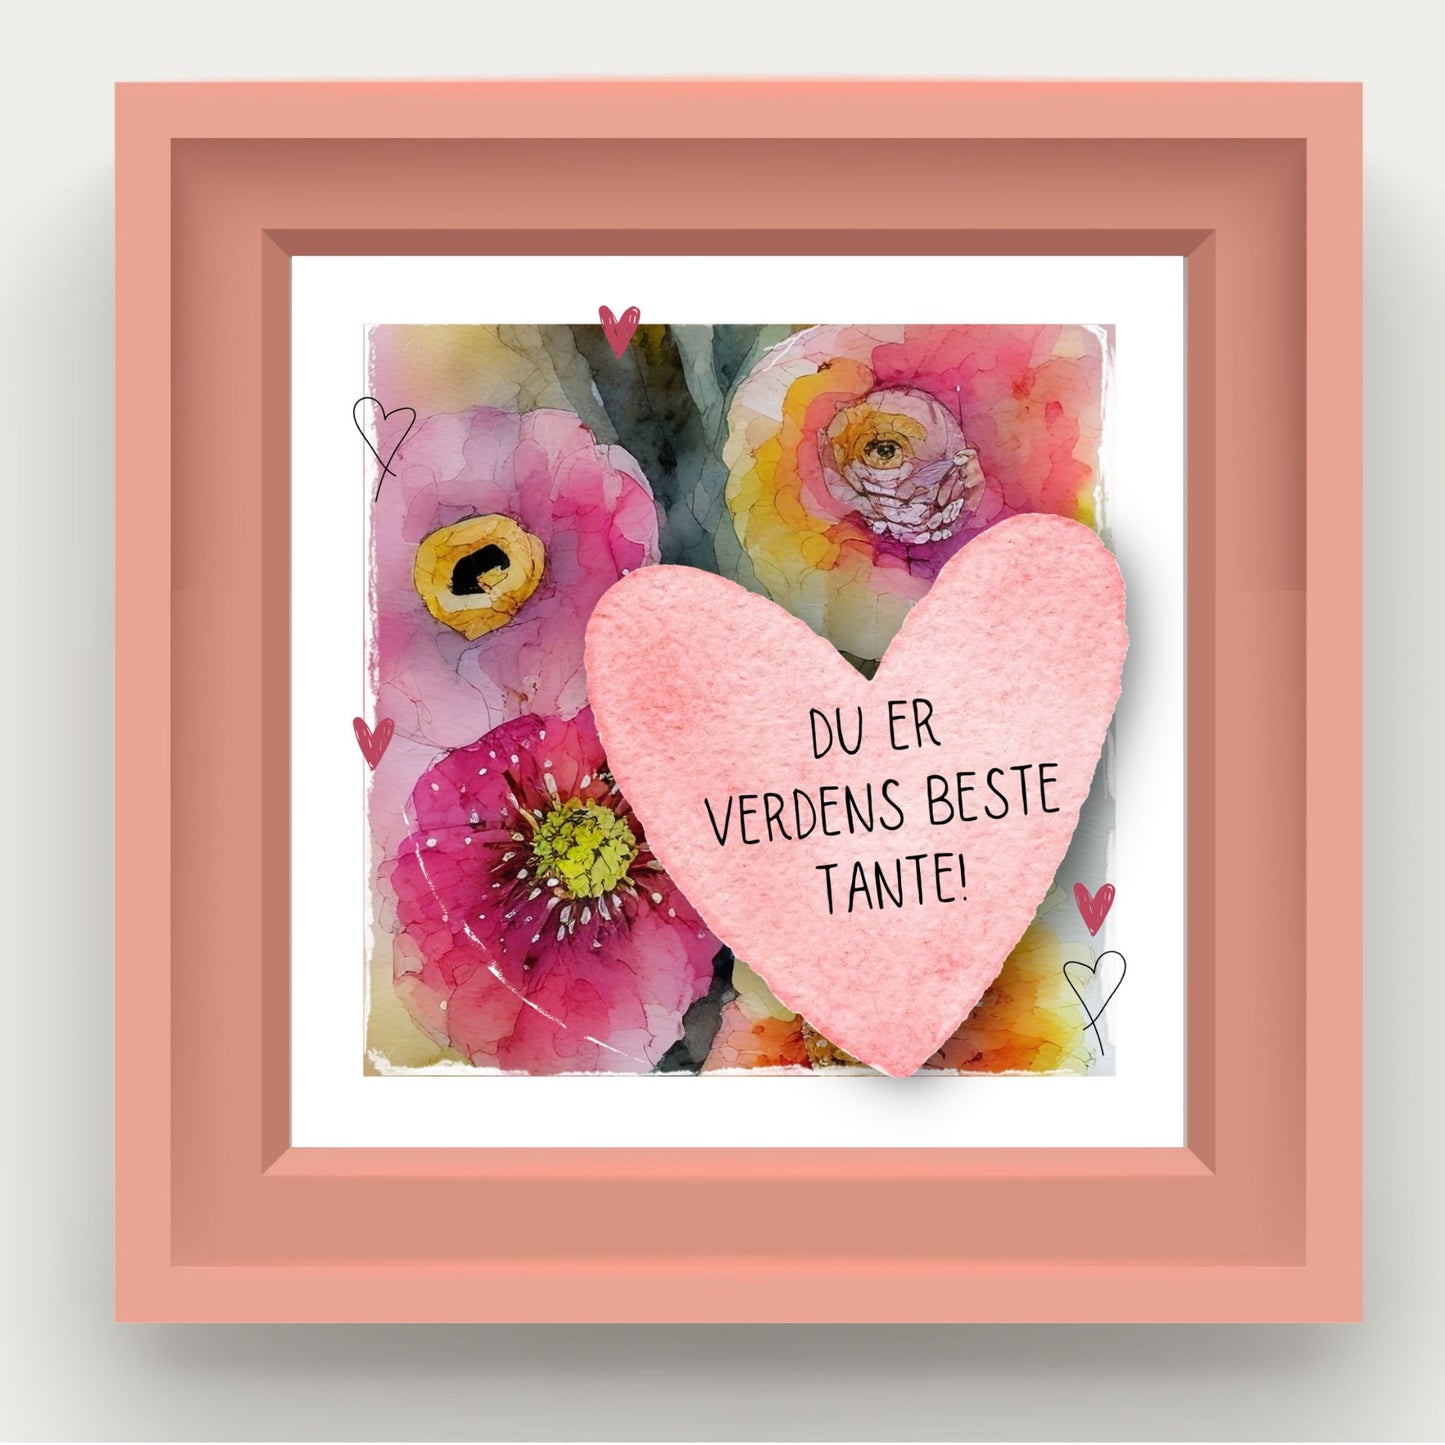 Grafisk plakat med et rosa hjerte påført tekst "Du er verdens beste tante!". Bagrunn i cerise og guloransje blomster. Illustrasjonen viser plakat i rosa ramme.